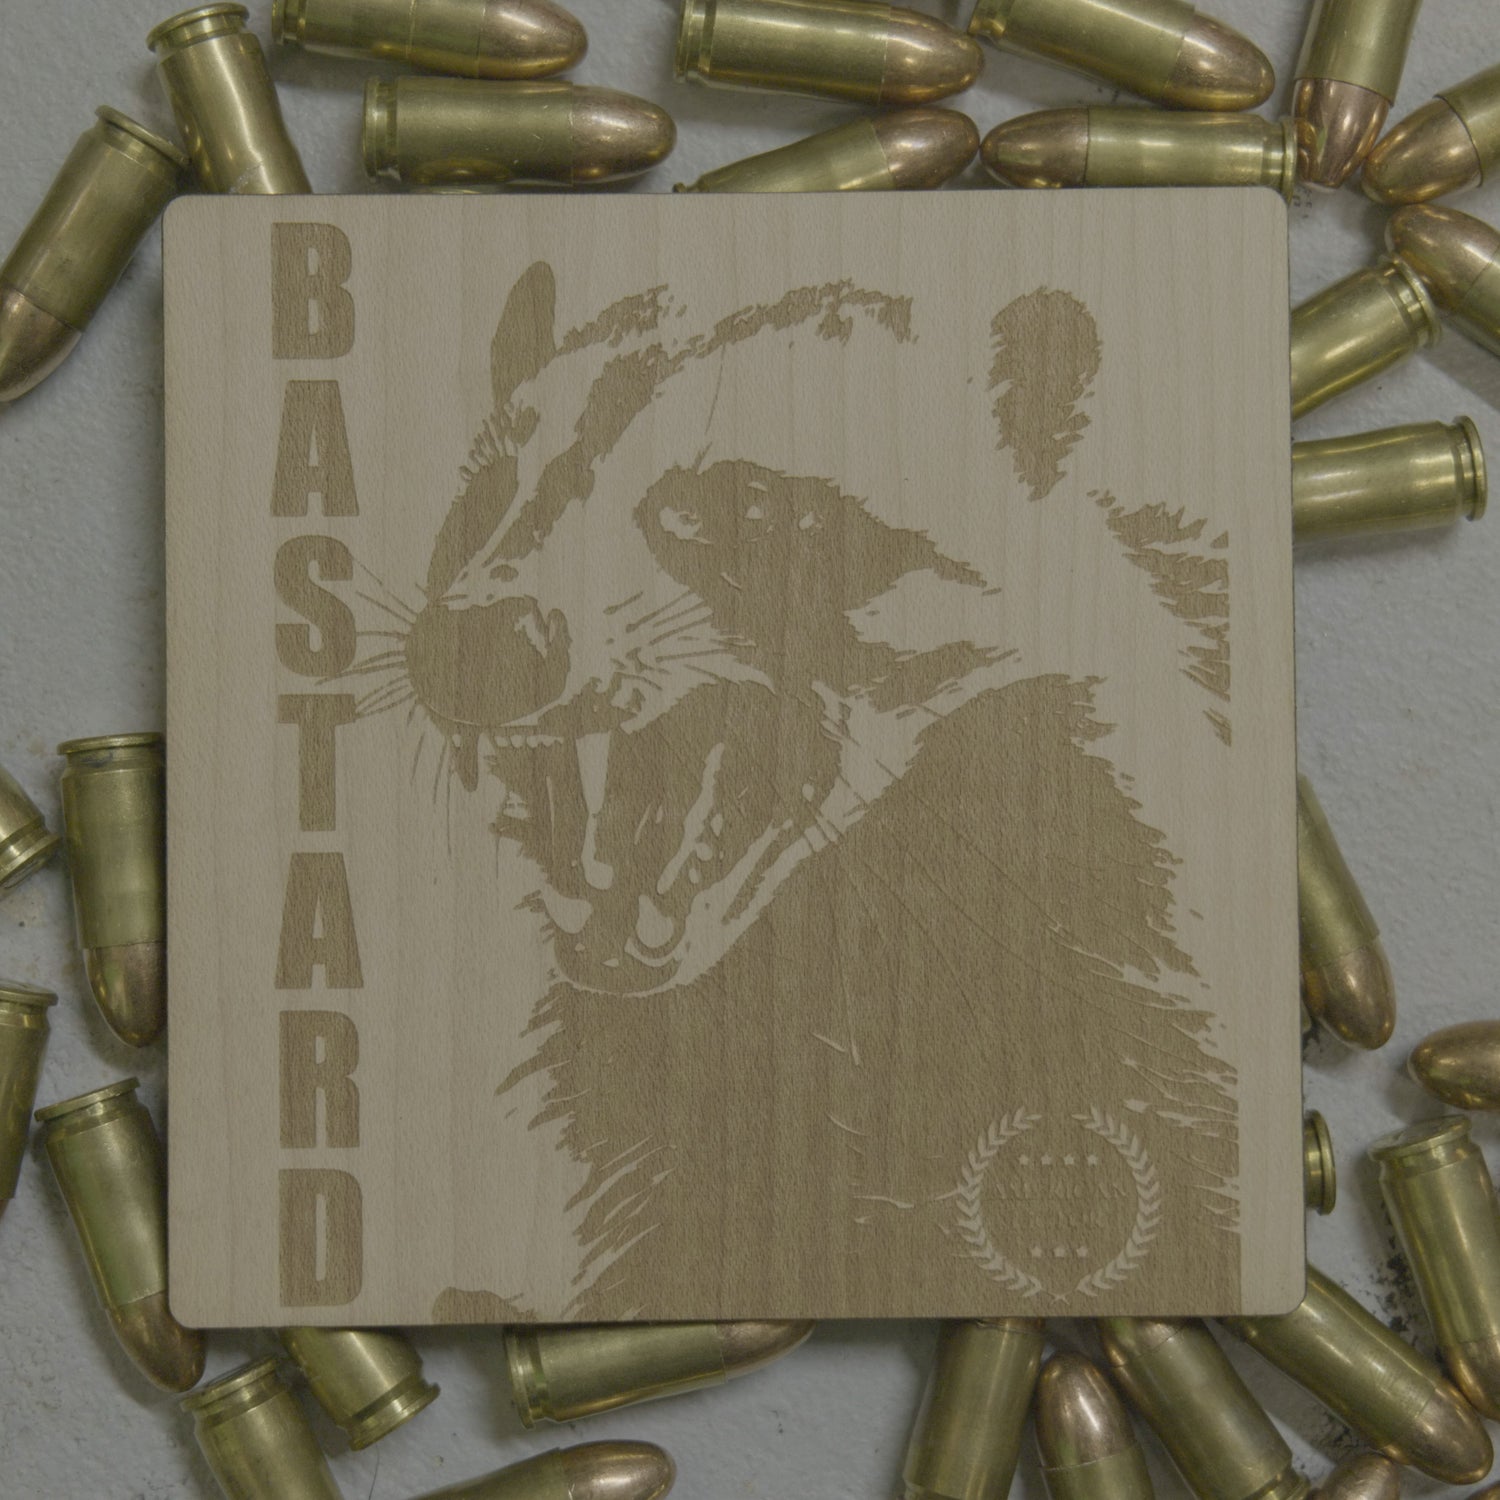 Badger the Bastard Patriotic Sticker